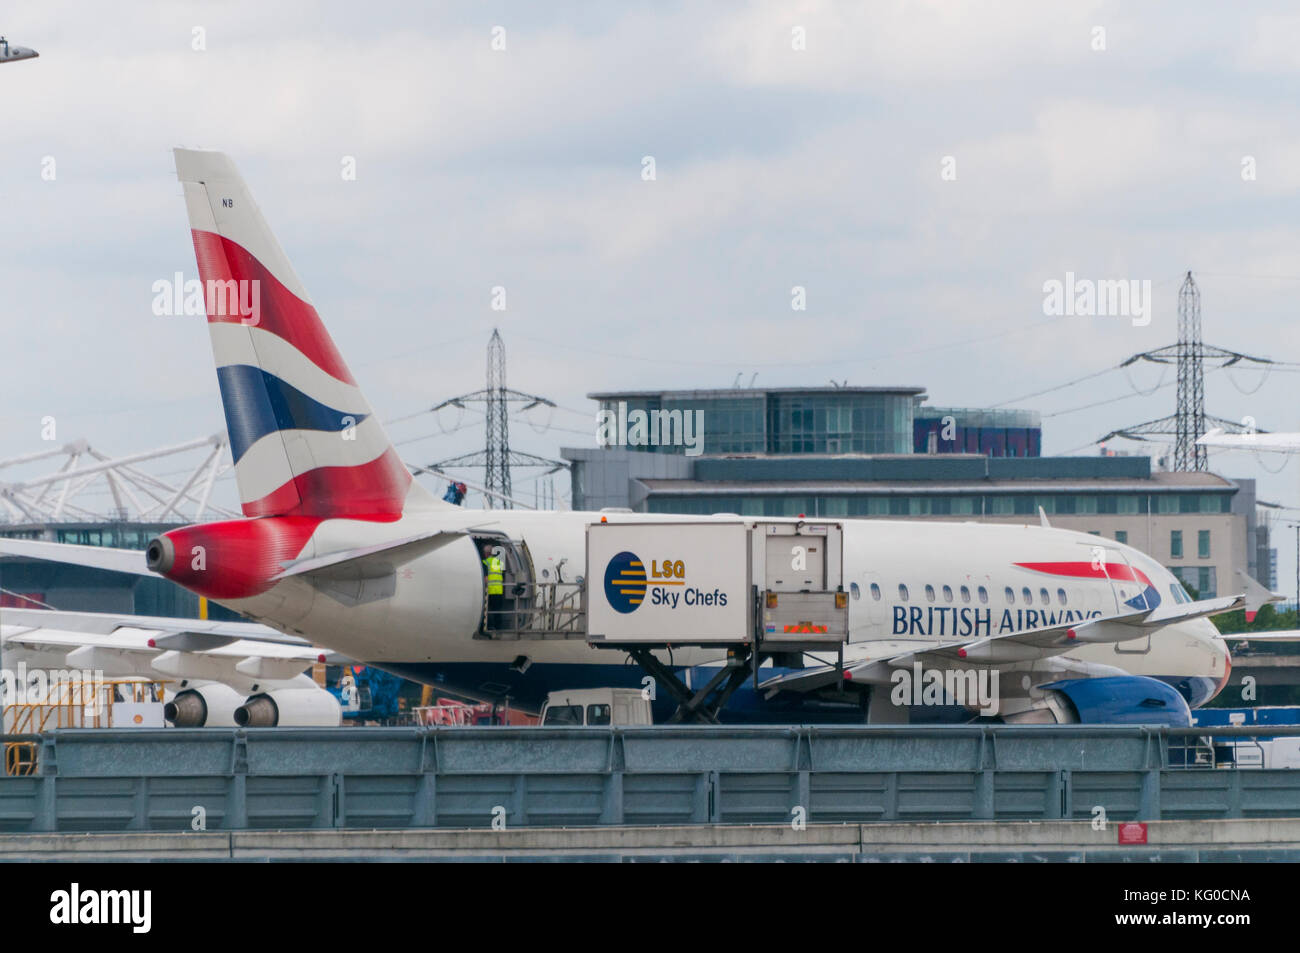 Londres, Royaume-Uni - 02 août 2013, un avion de British Airways restauration chargement avant le décollage à l'aéroport de London City Banque D'Images